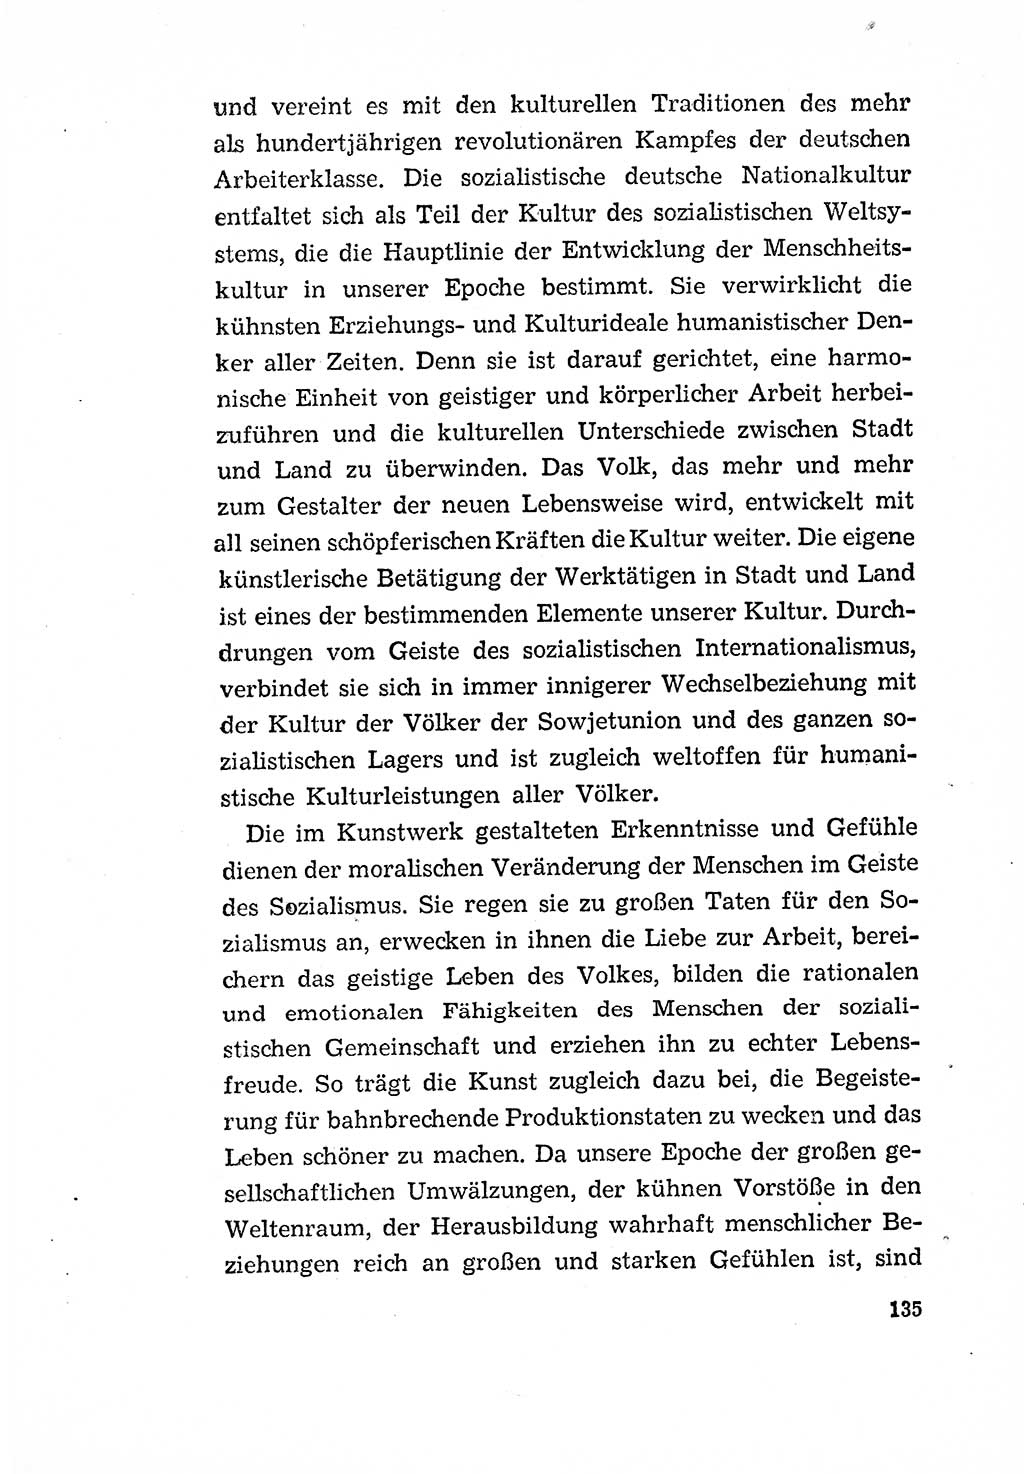 Programm der Sozialistischen Einheitspartei Deutschlands (SED) [Deutsche Demokratische Republik (DDR)] 1963, Seite 135 (Progr. SED DDR 1963, S. 135)